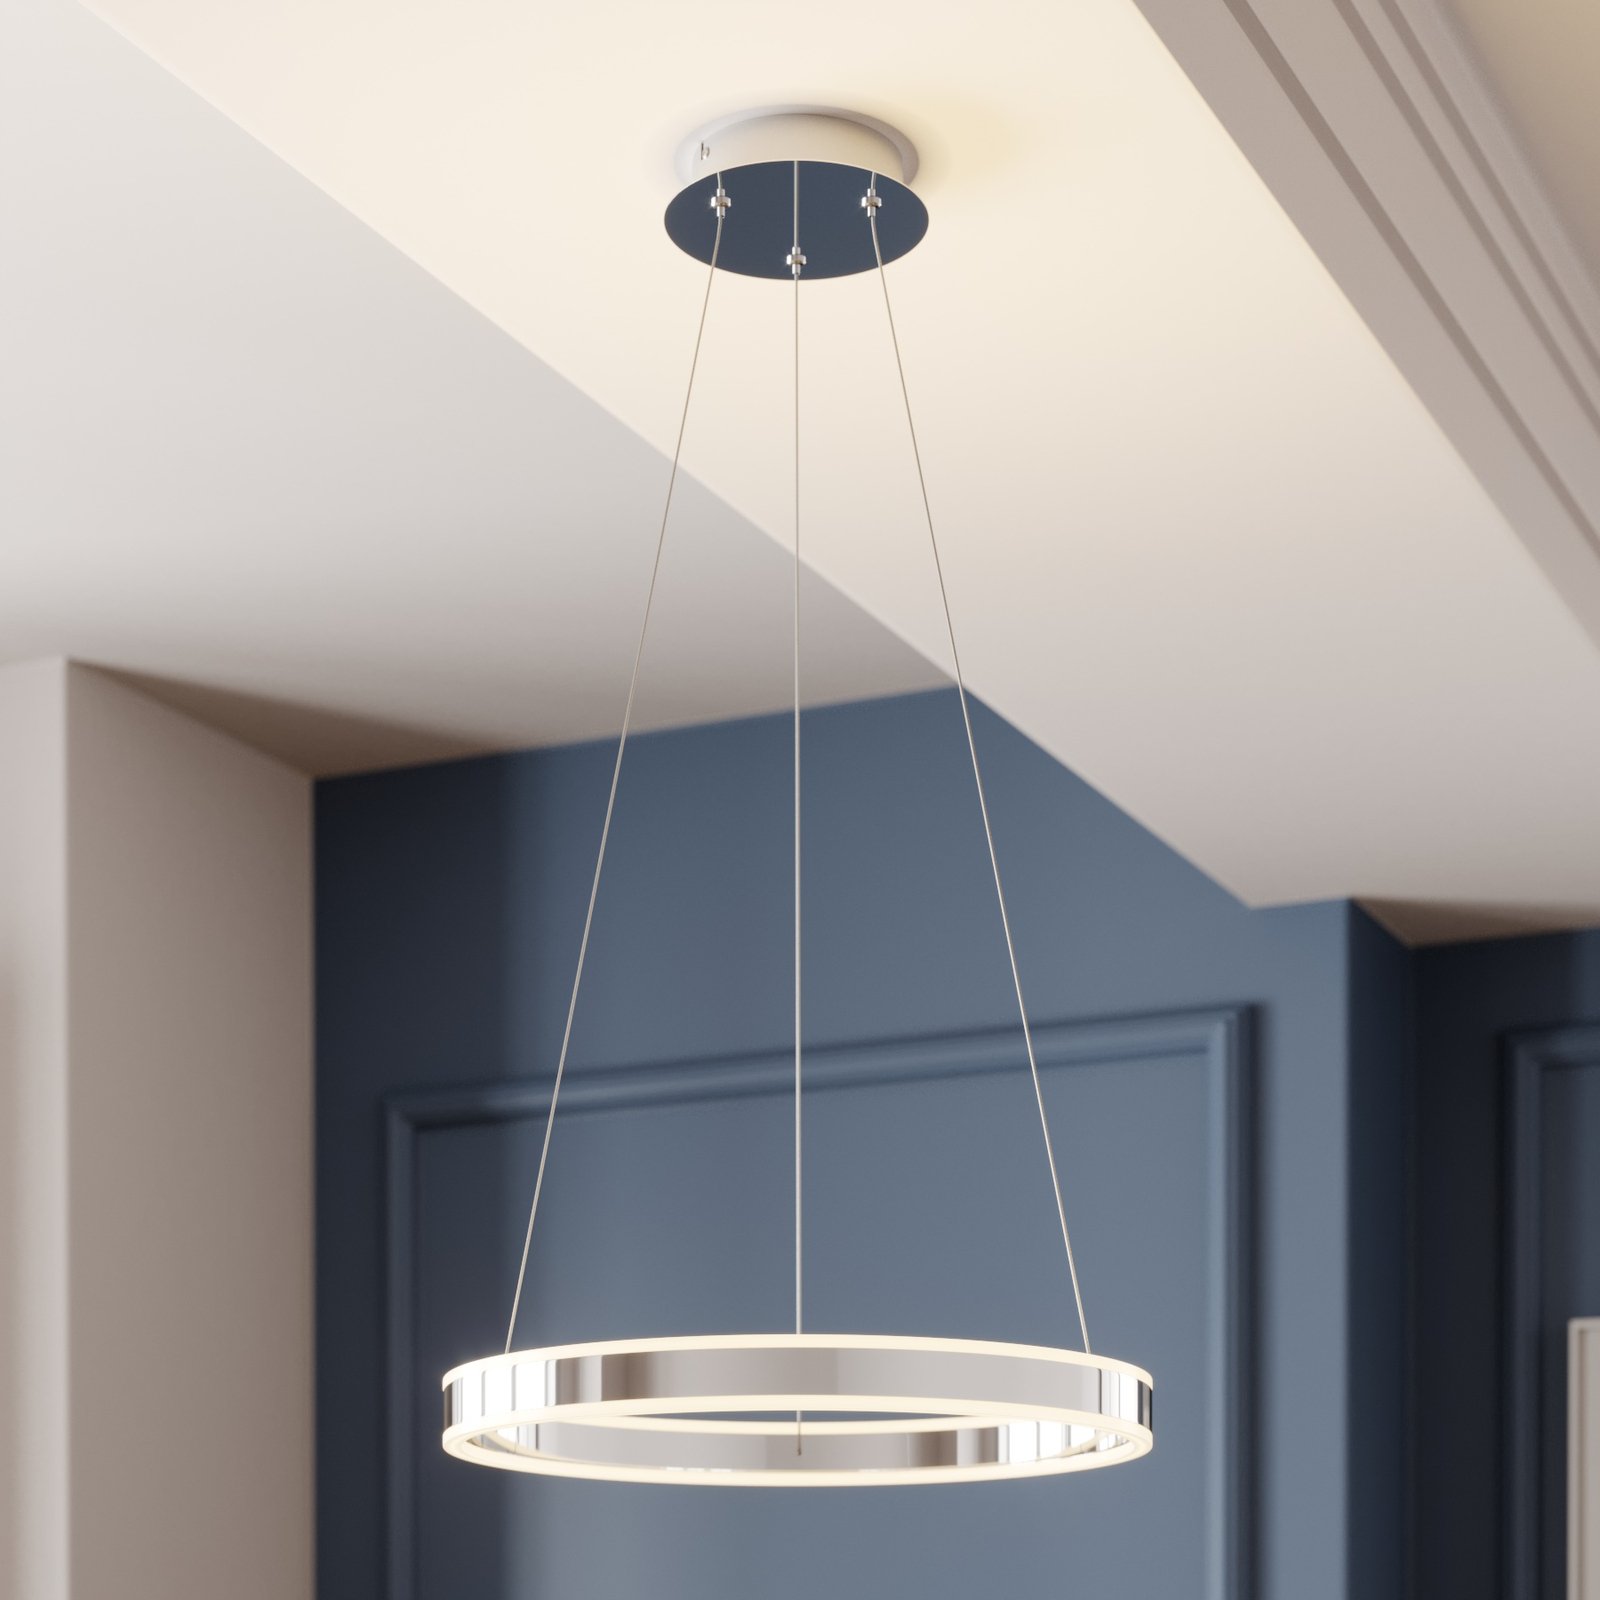 LED hanglamp Lyani in chroom, dimbaar, 50 cm